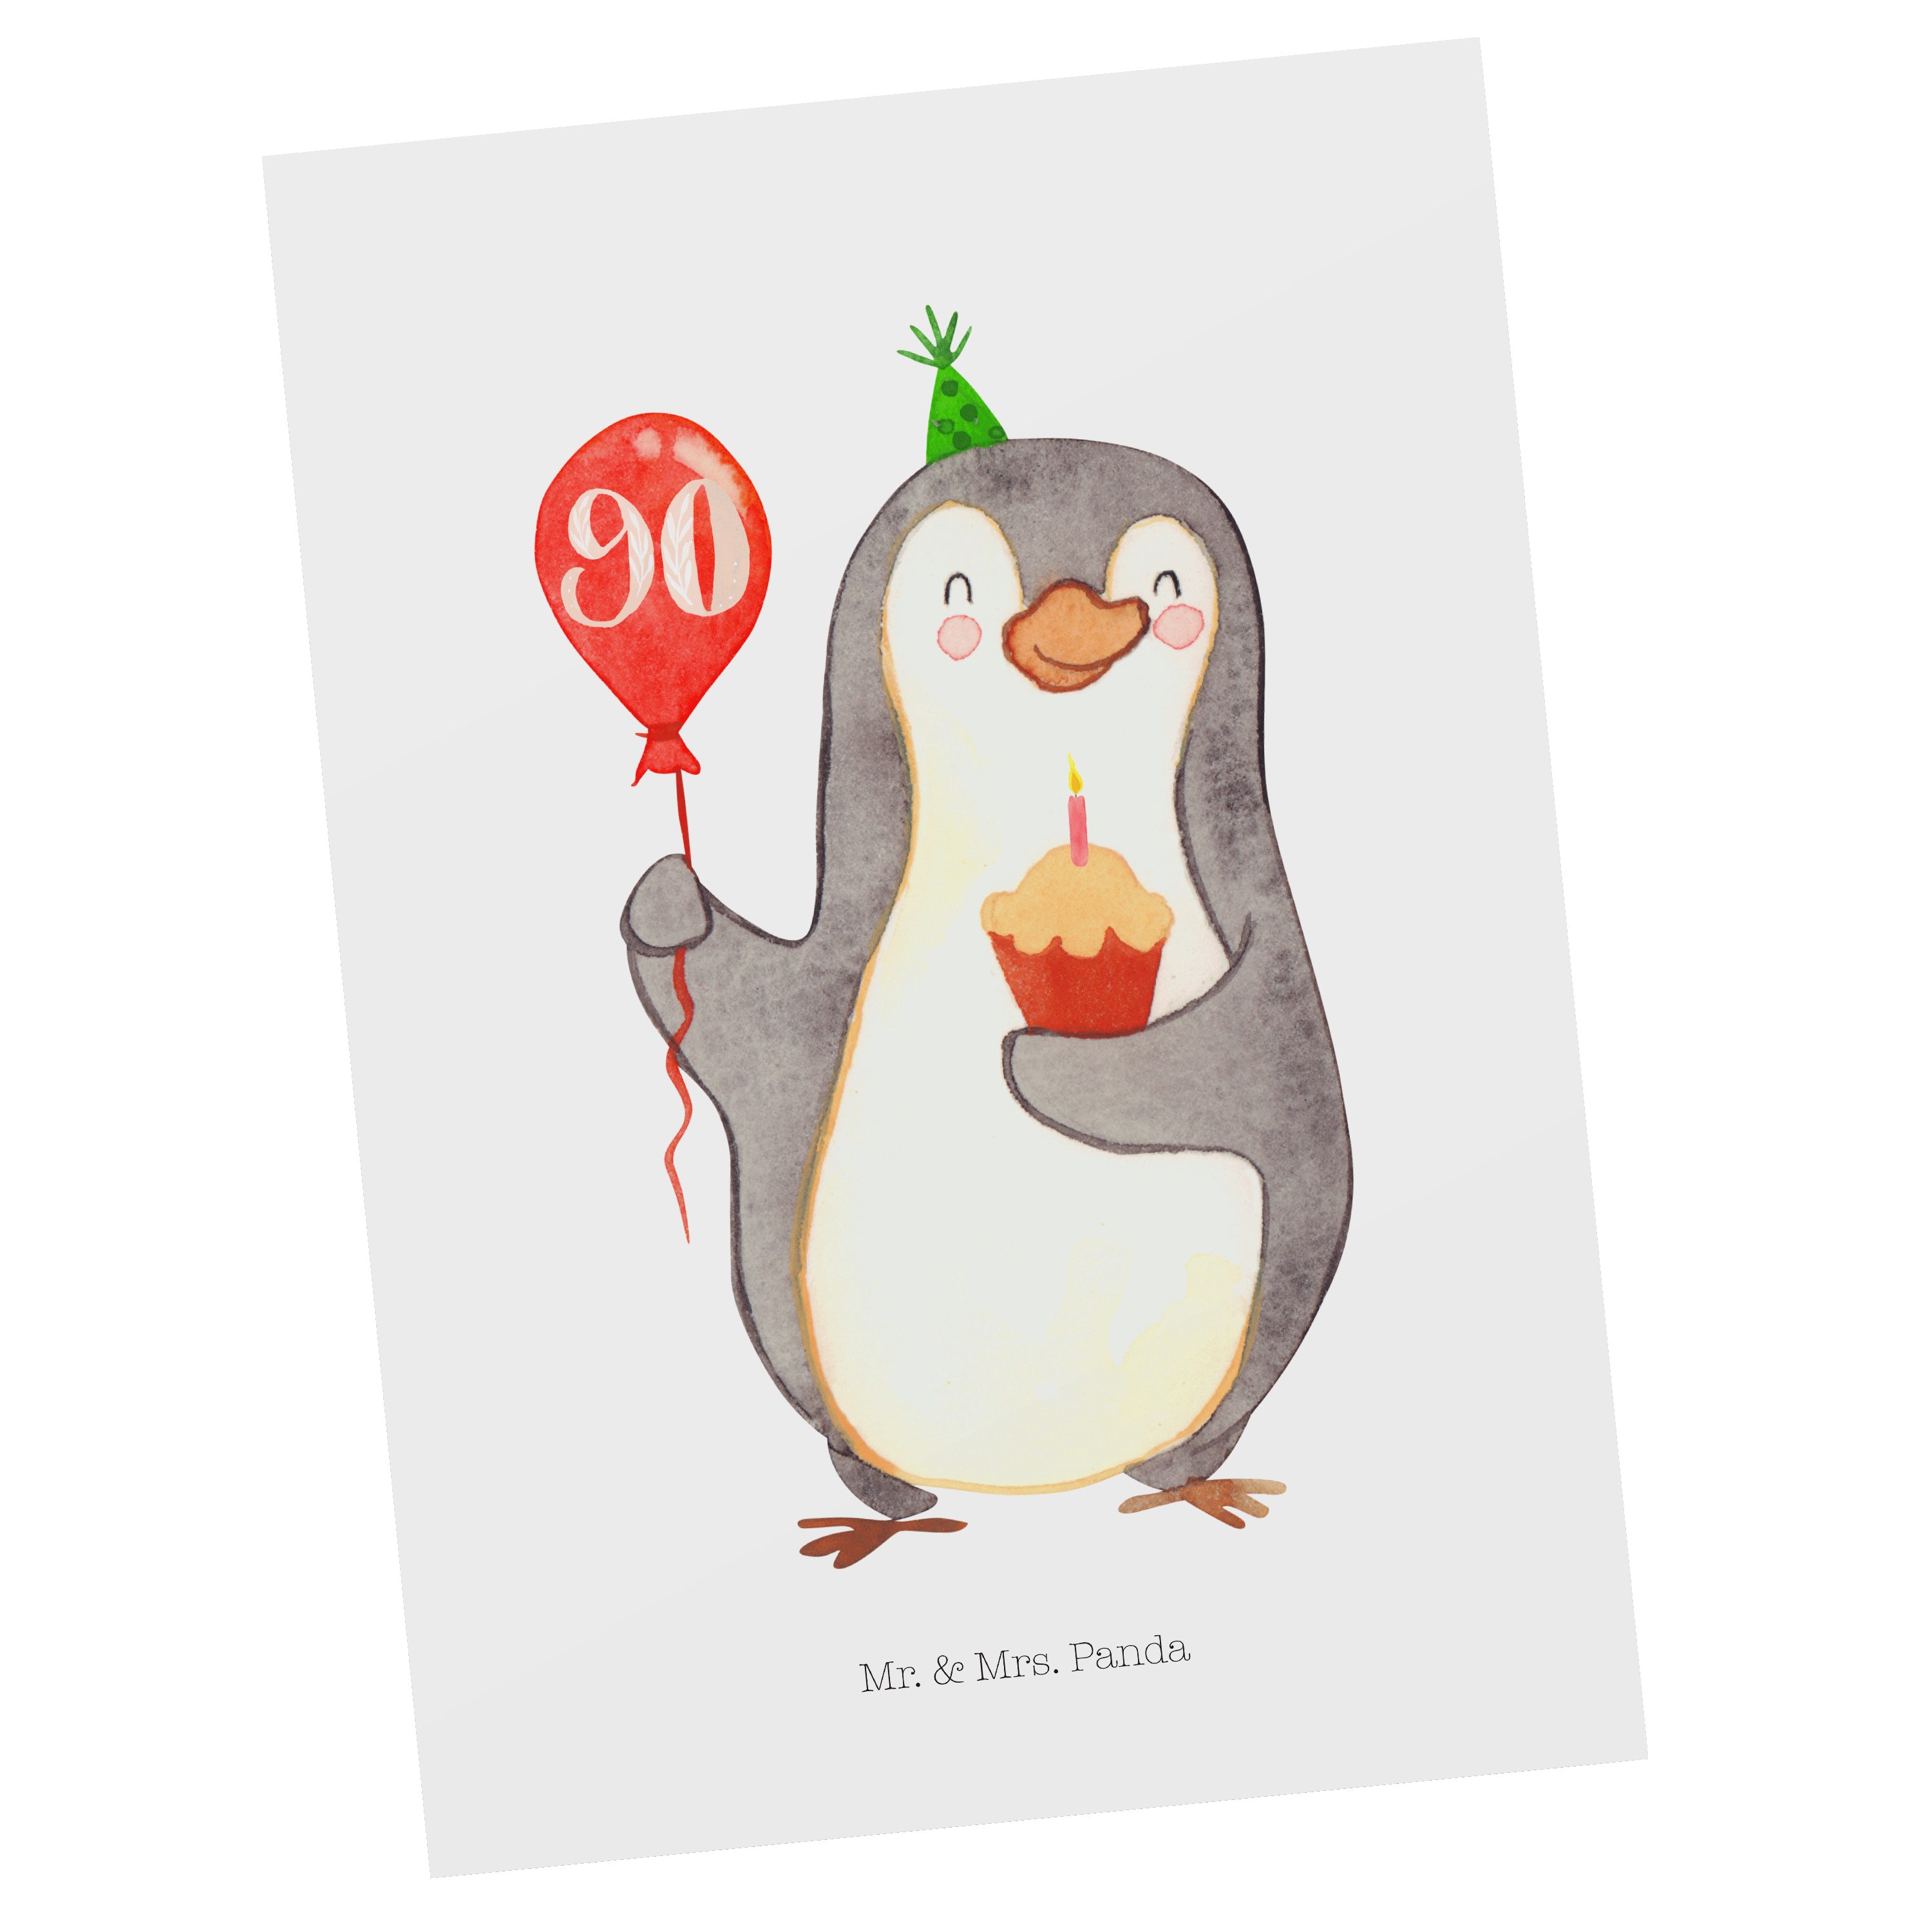 Mr. & Mrs. Panda Postkarte 90. Geburtstag Pinguin Luftballon - Weiß - Geschenk, Happy Birthday